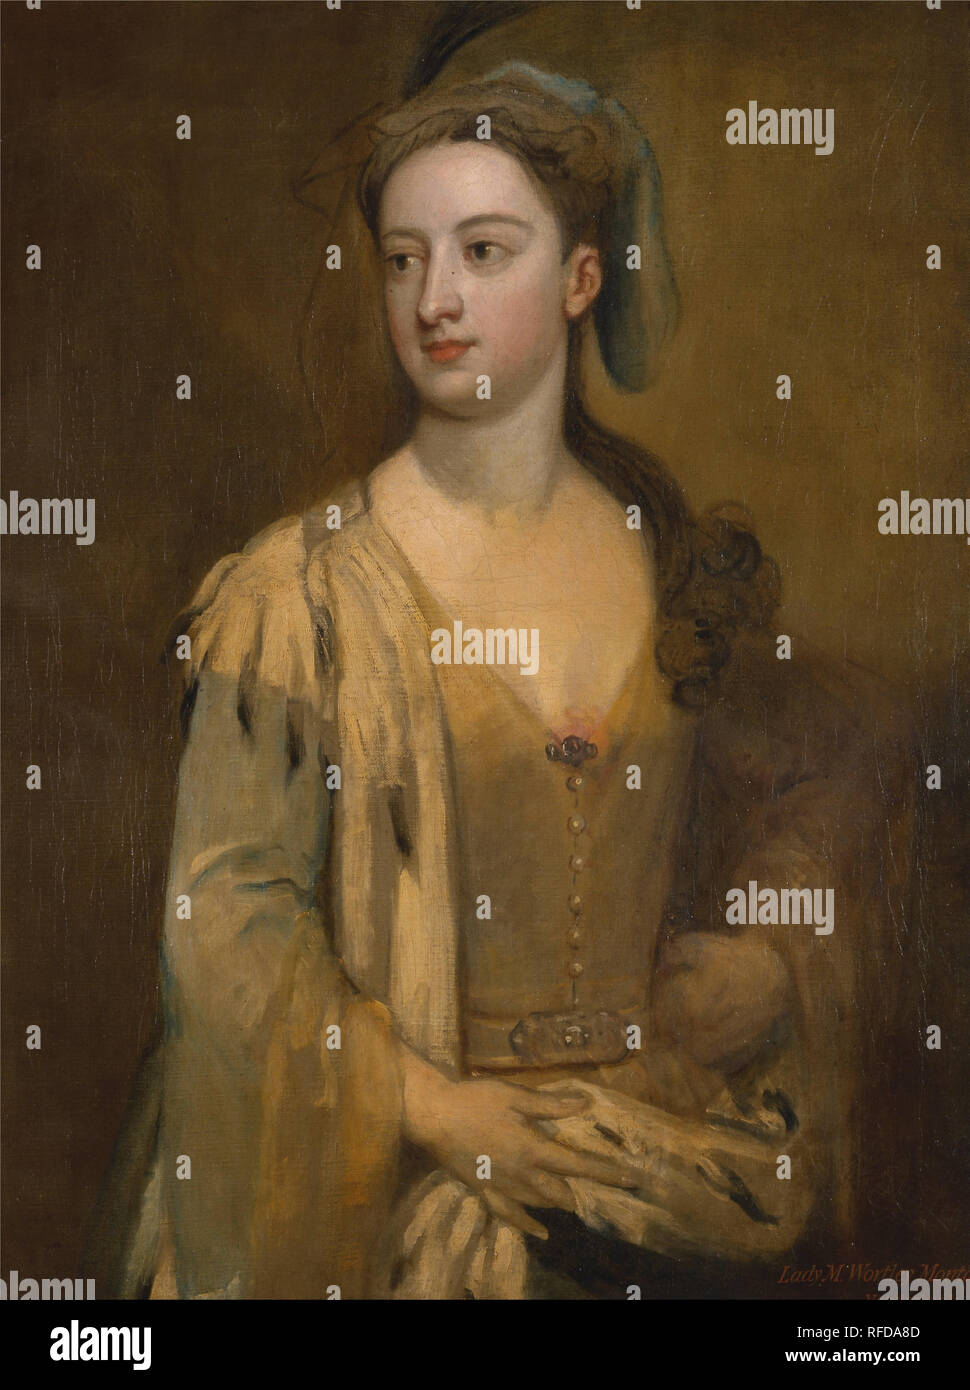 Une femme appelée Lady Mary Wortley Montagu. Date/Période : Entre 1715 et 1720. La peinture. Huile sur toile. Hauteur : 892 mm (35.11 in) ; Largeur : 692 mm (27.24 in). Auteur : Godfrey Kneller. Banque D'Images